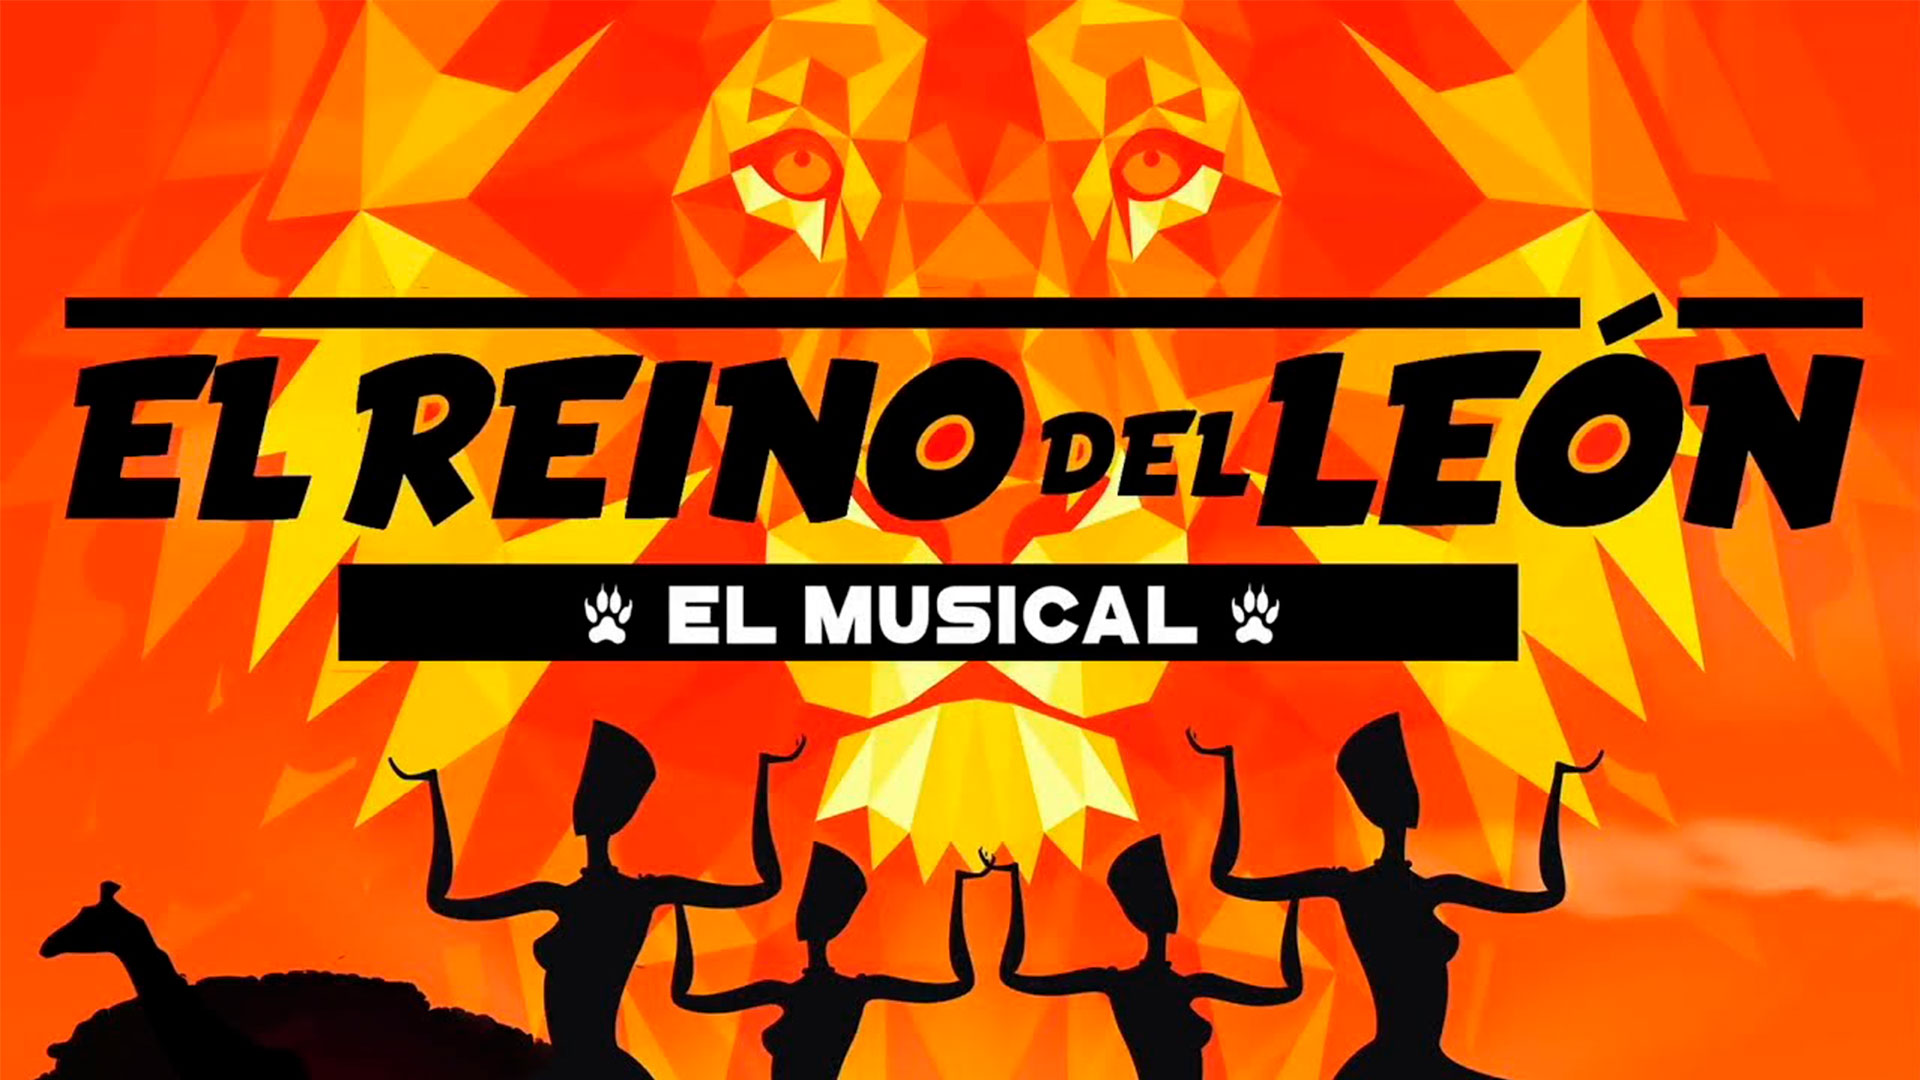 Musical El reino del León